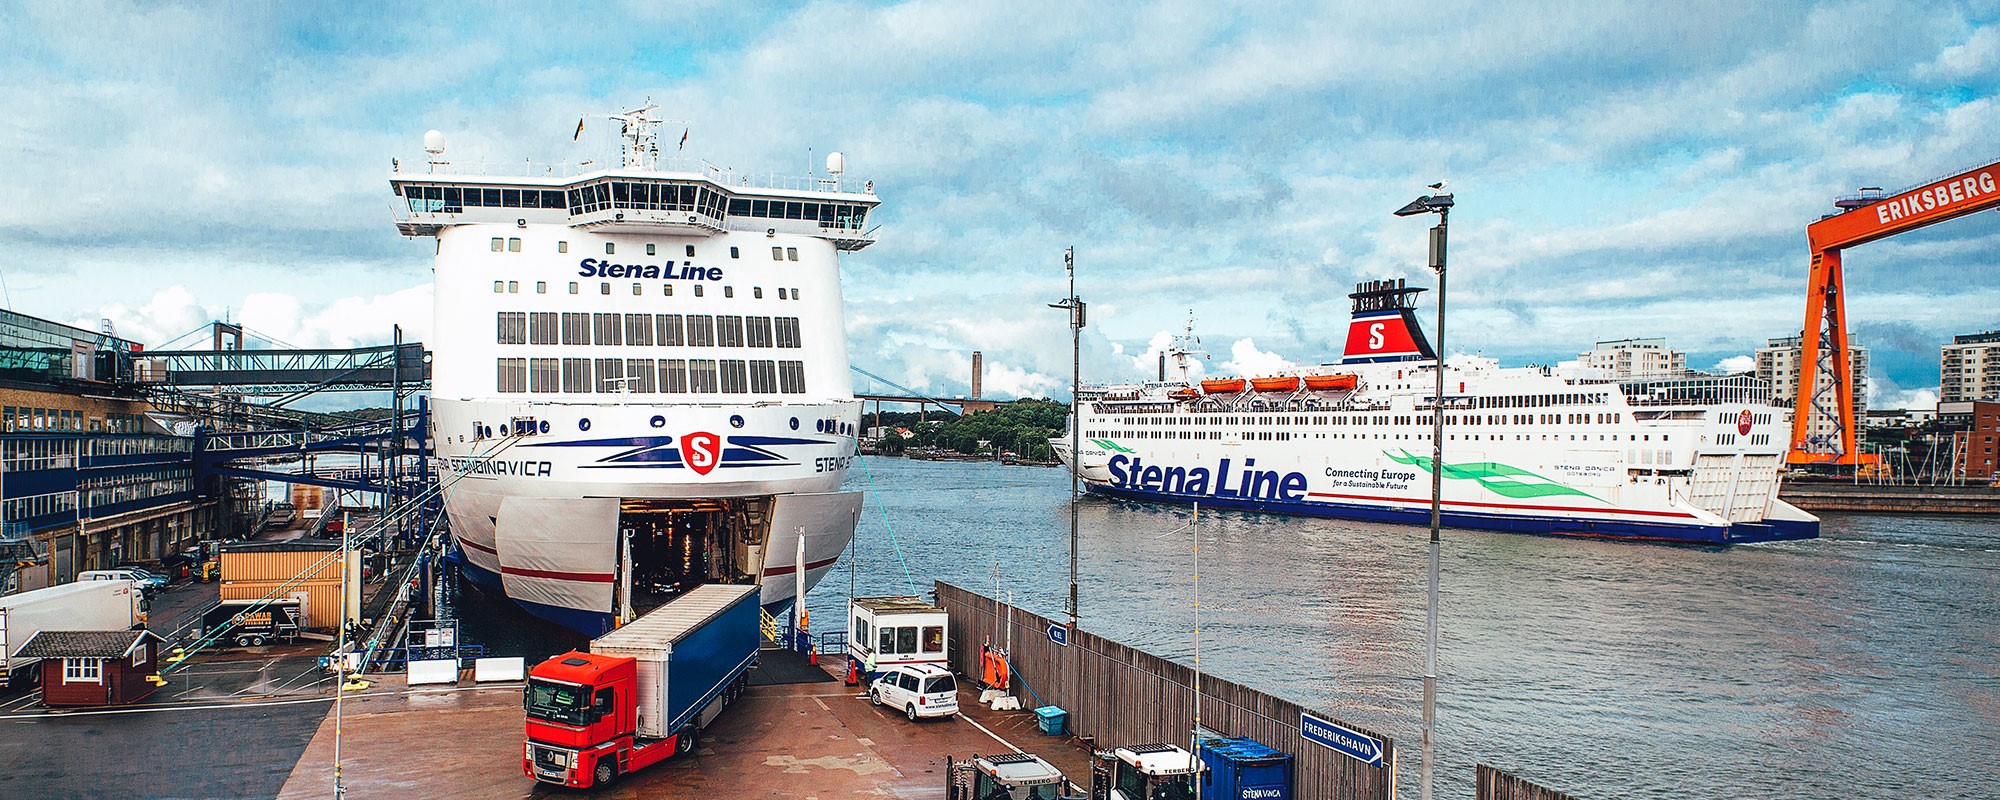 Stena vessels